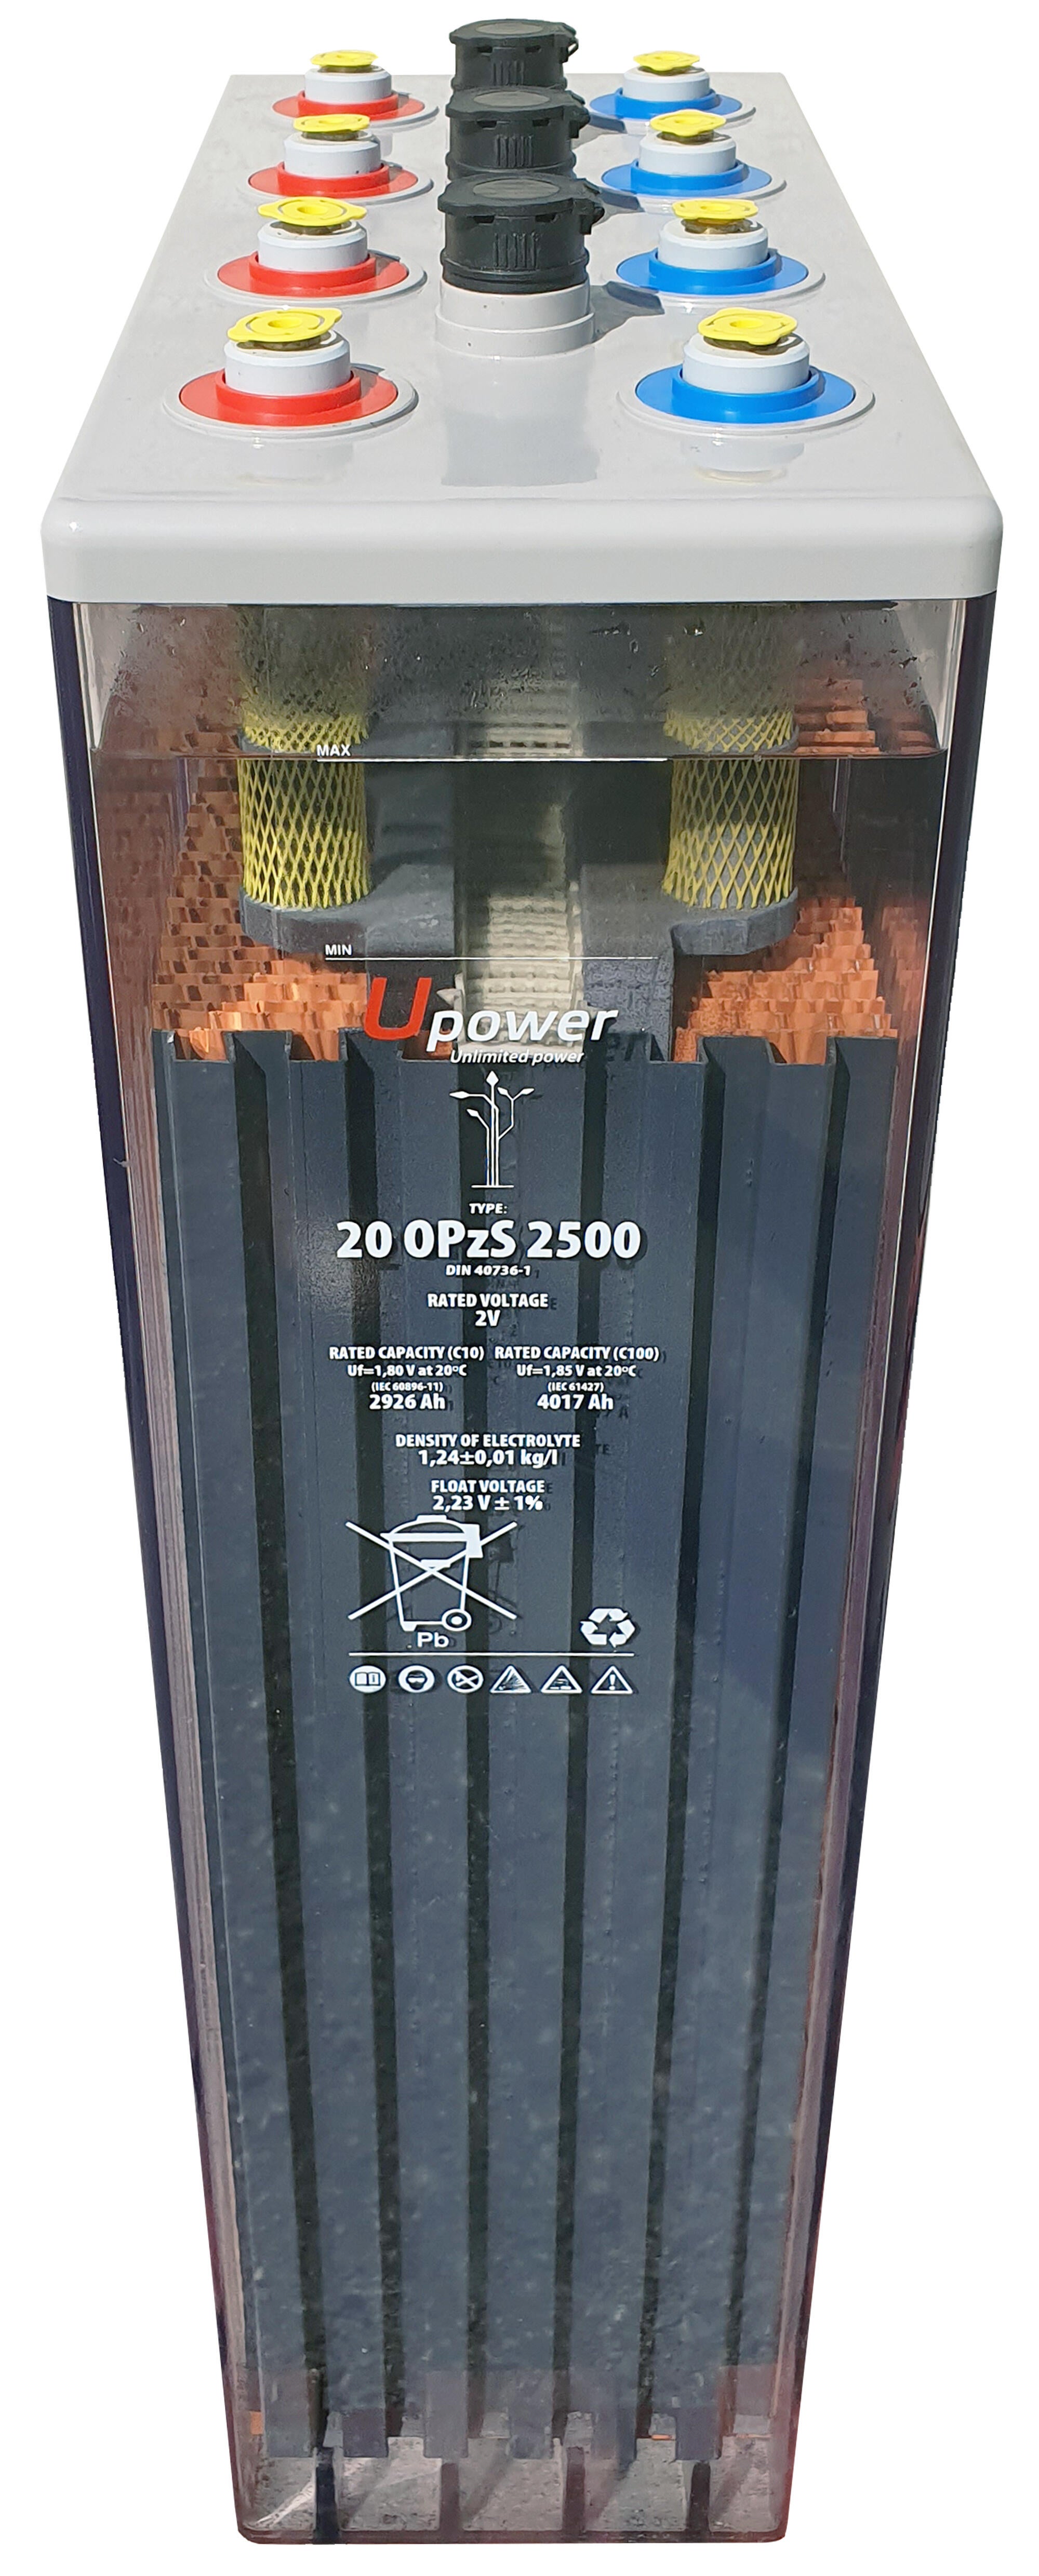 Batería solar estacionaria u-power 20 opzs 2500 2v c100 4590ah